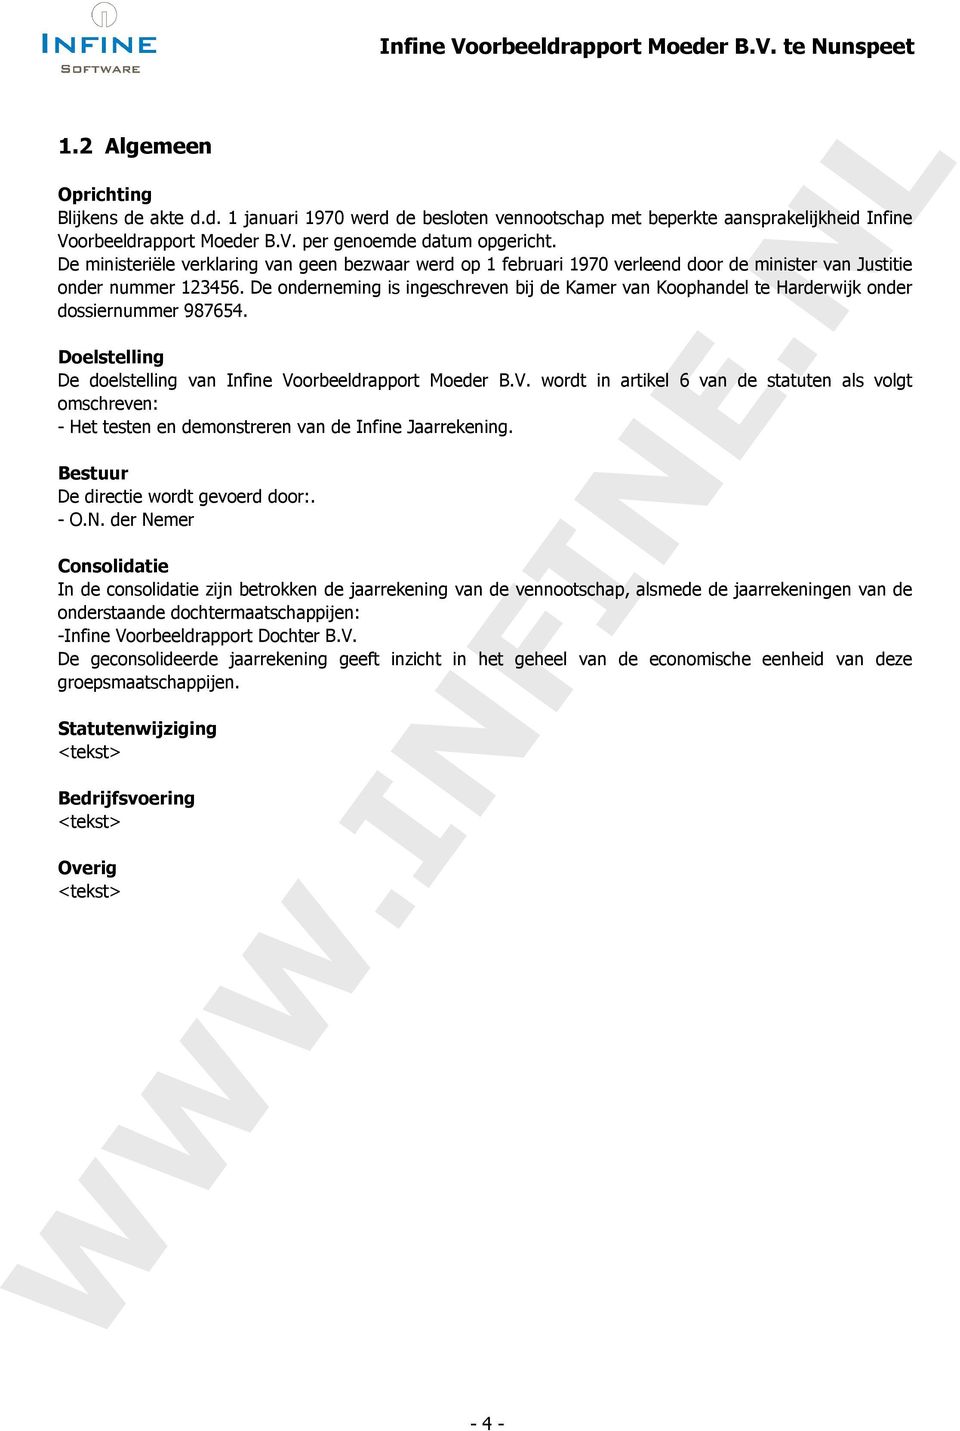 De onderneming is ingeschreven bij de Kamer van Koophandel te Harderwijk onder dossiernummer 987654. Doelstelling De doelstelling van Infine Vo